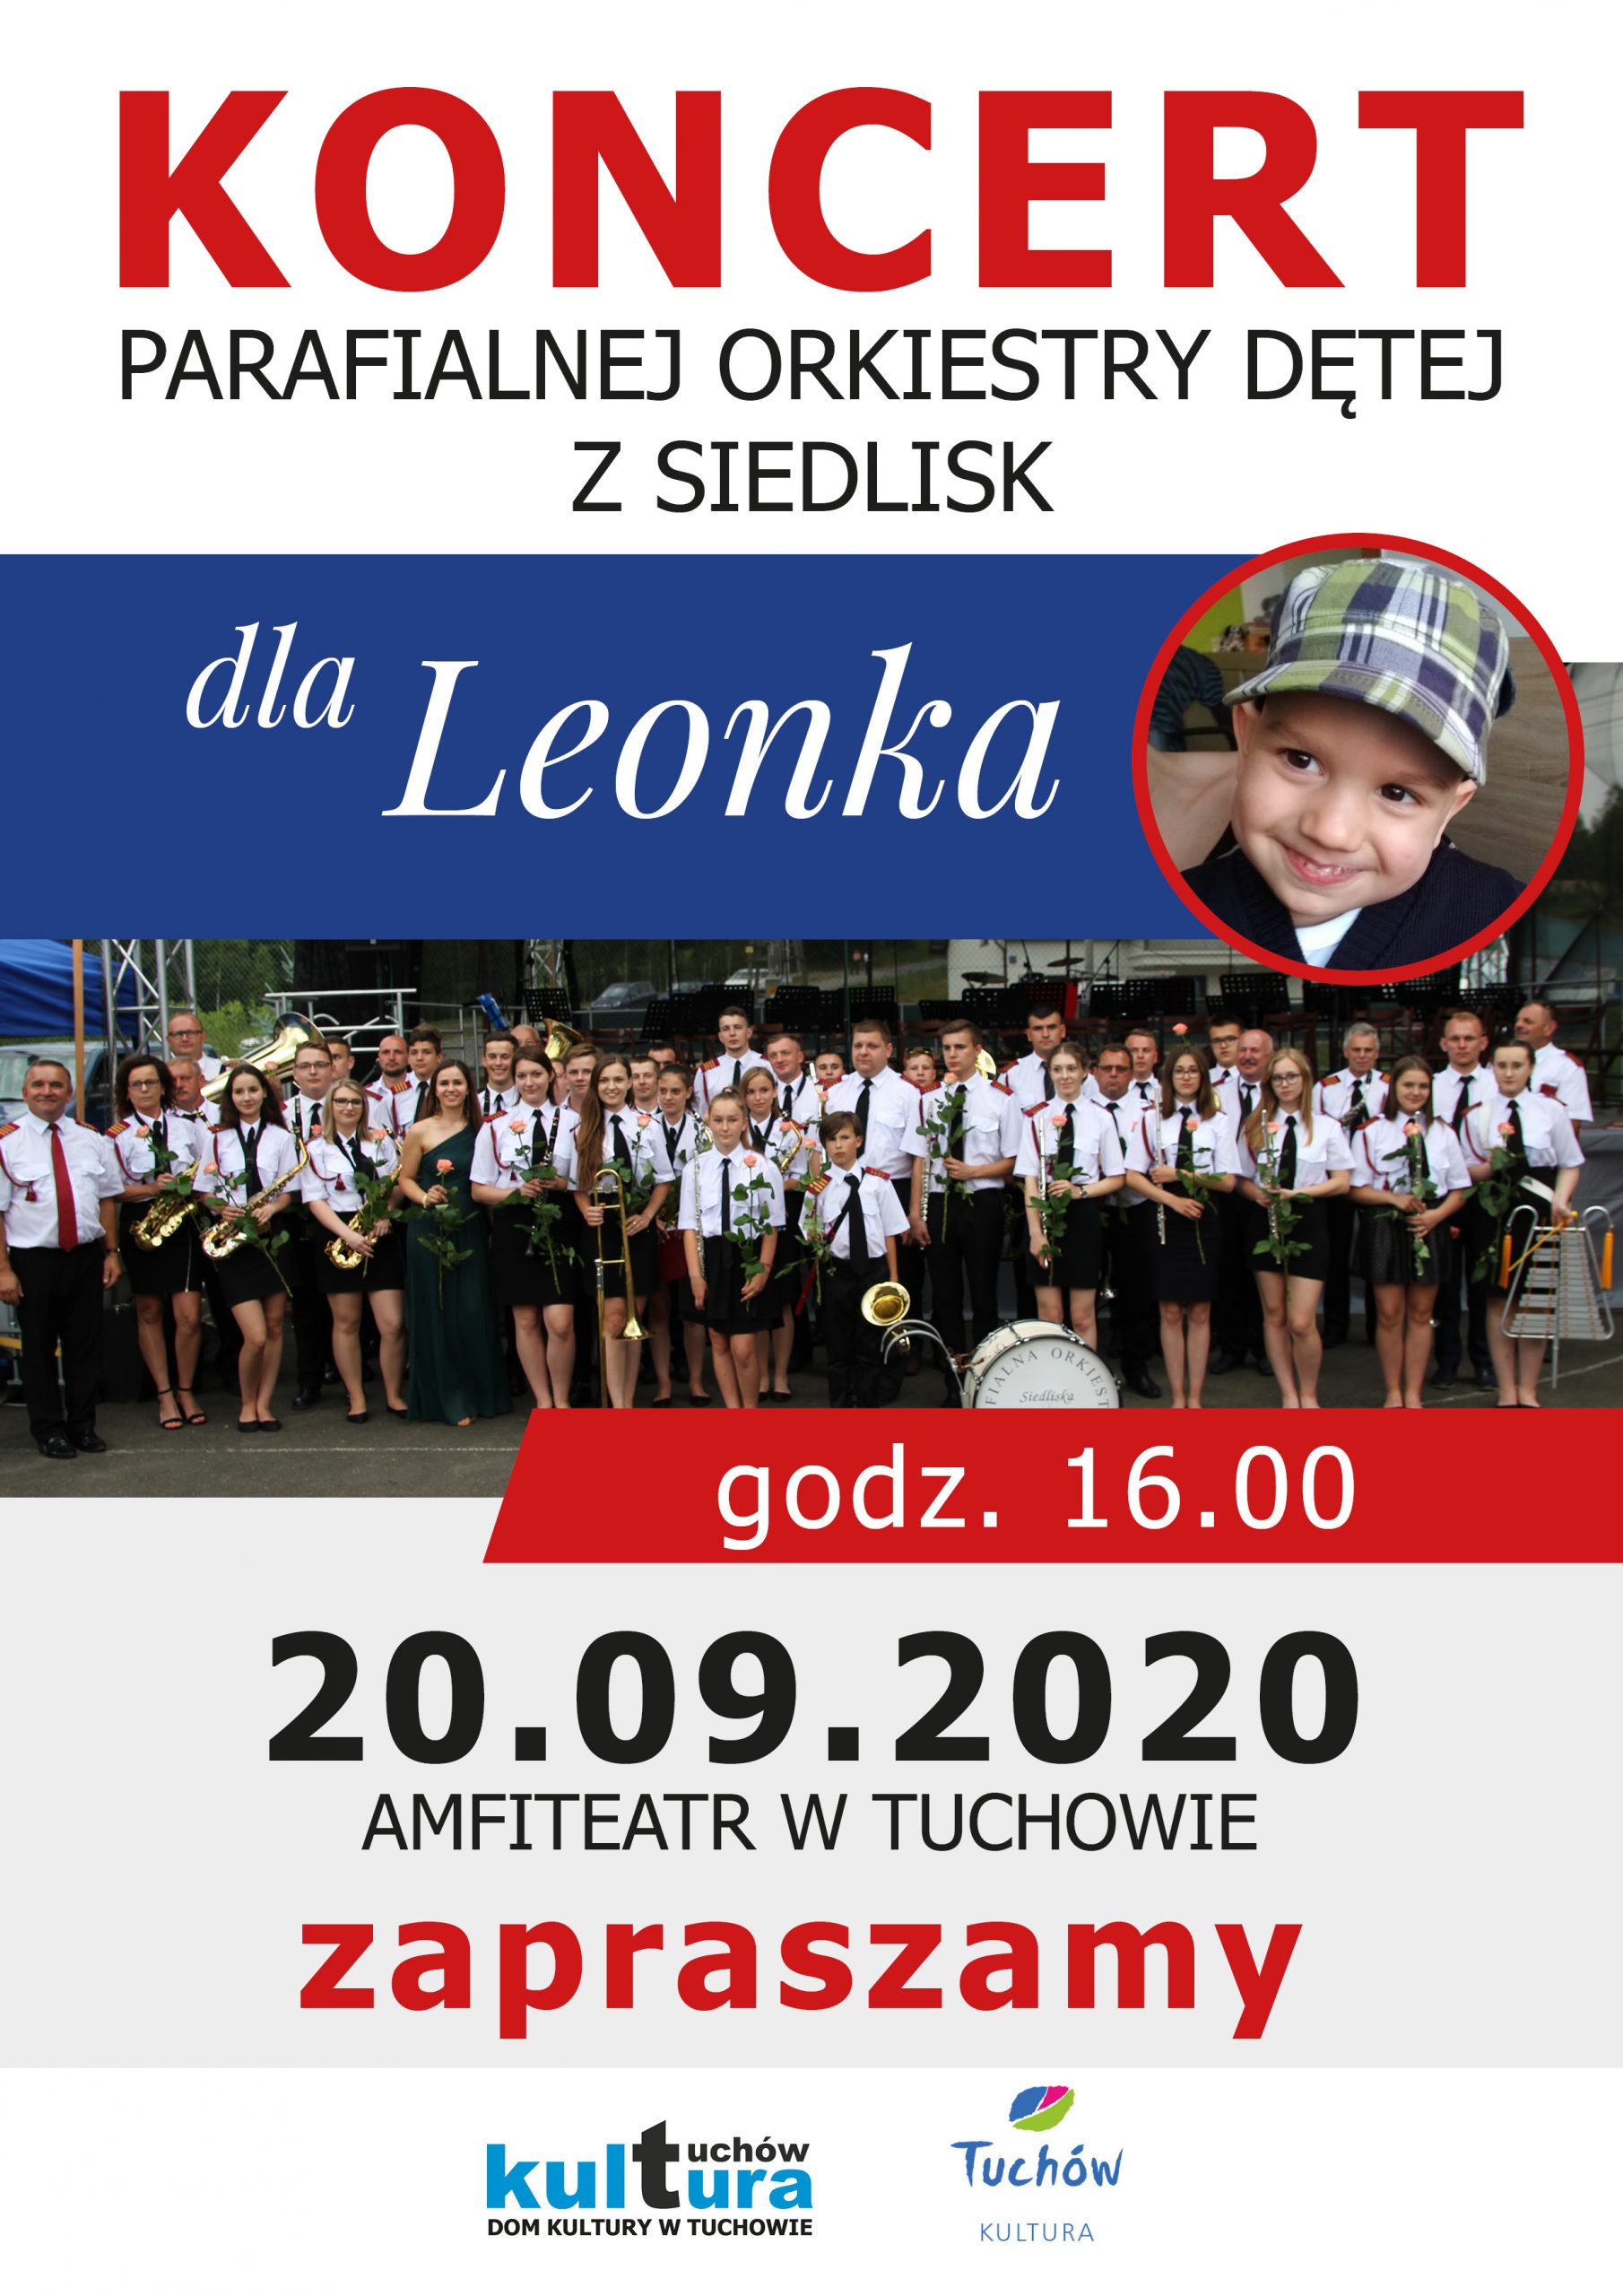 Parafialna Orkiestra Dęta z Siedlisk zagra dla Leonka!